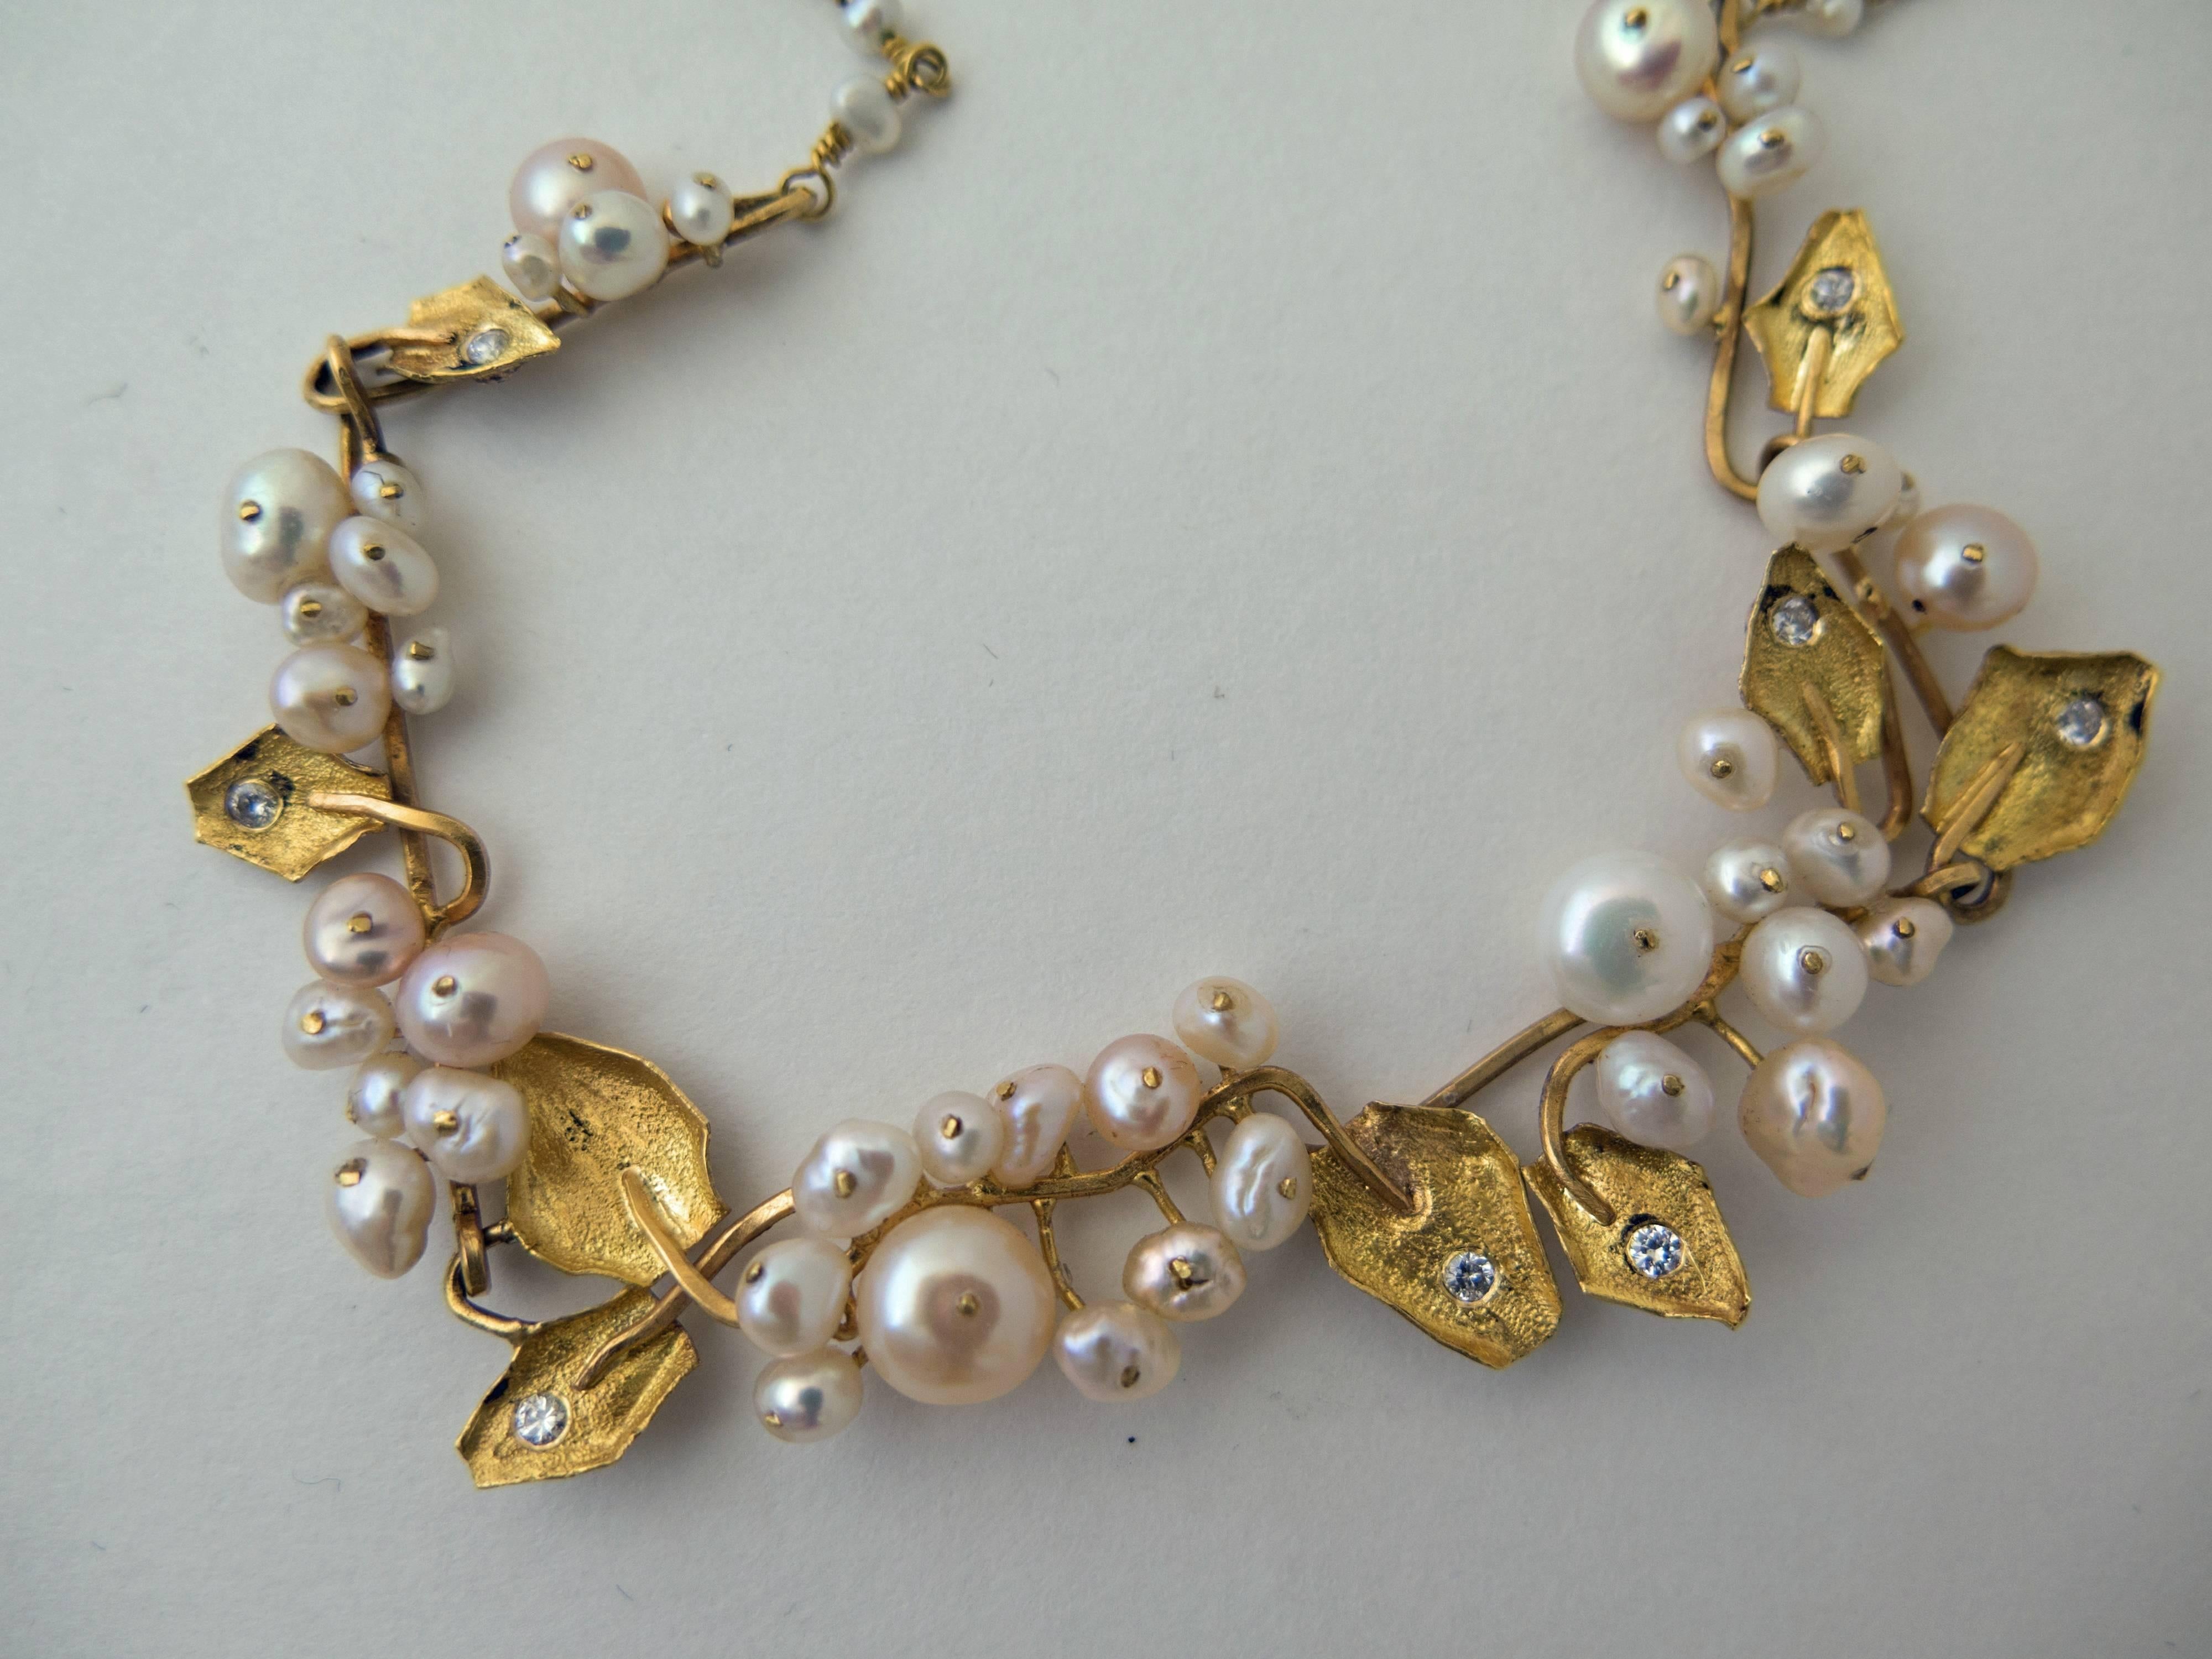 Magnifique collier réalisé en or jaune 22 k avec des perles et des diamants par George Argyros, un bijoutier grec. Daté de 1982. Il contient 60 perles et huit diamants ronds de 0,02ct. Les diamants sont de couleur G-H et de pureté VS. Marqué au